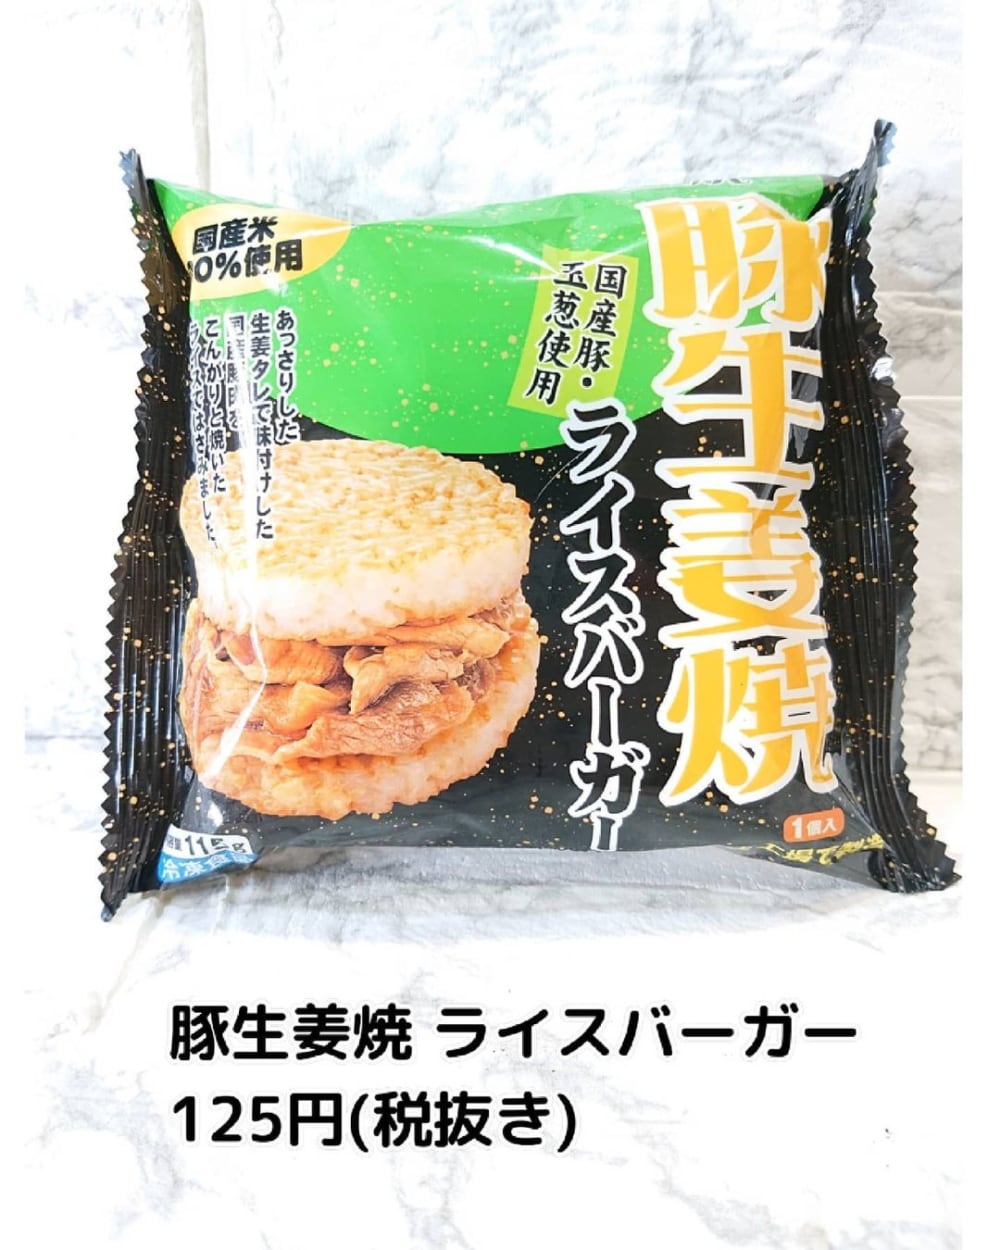 業務スーパーの豚生姜焼ライスバーガーのパッケージ写真